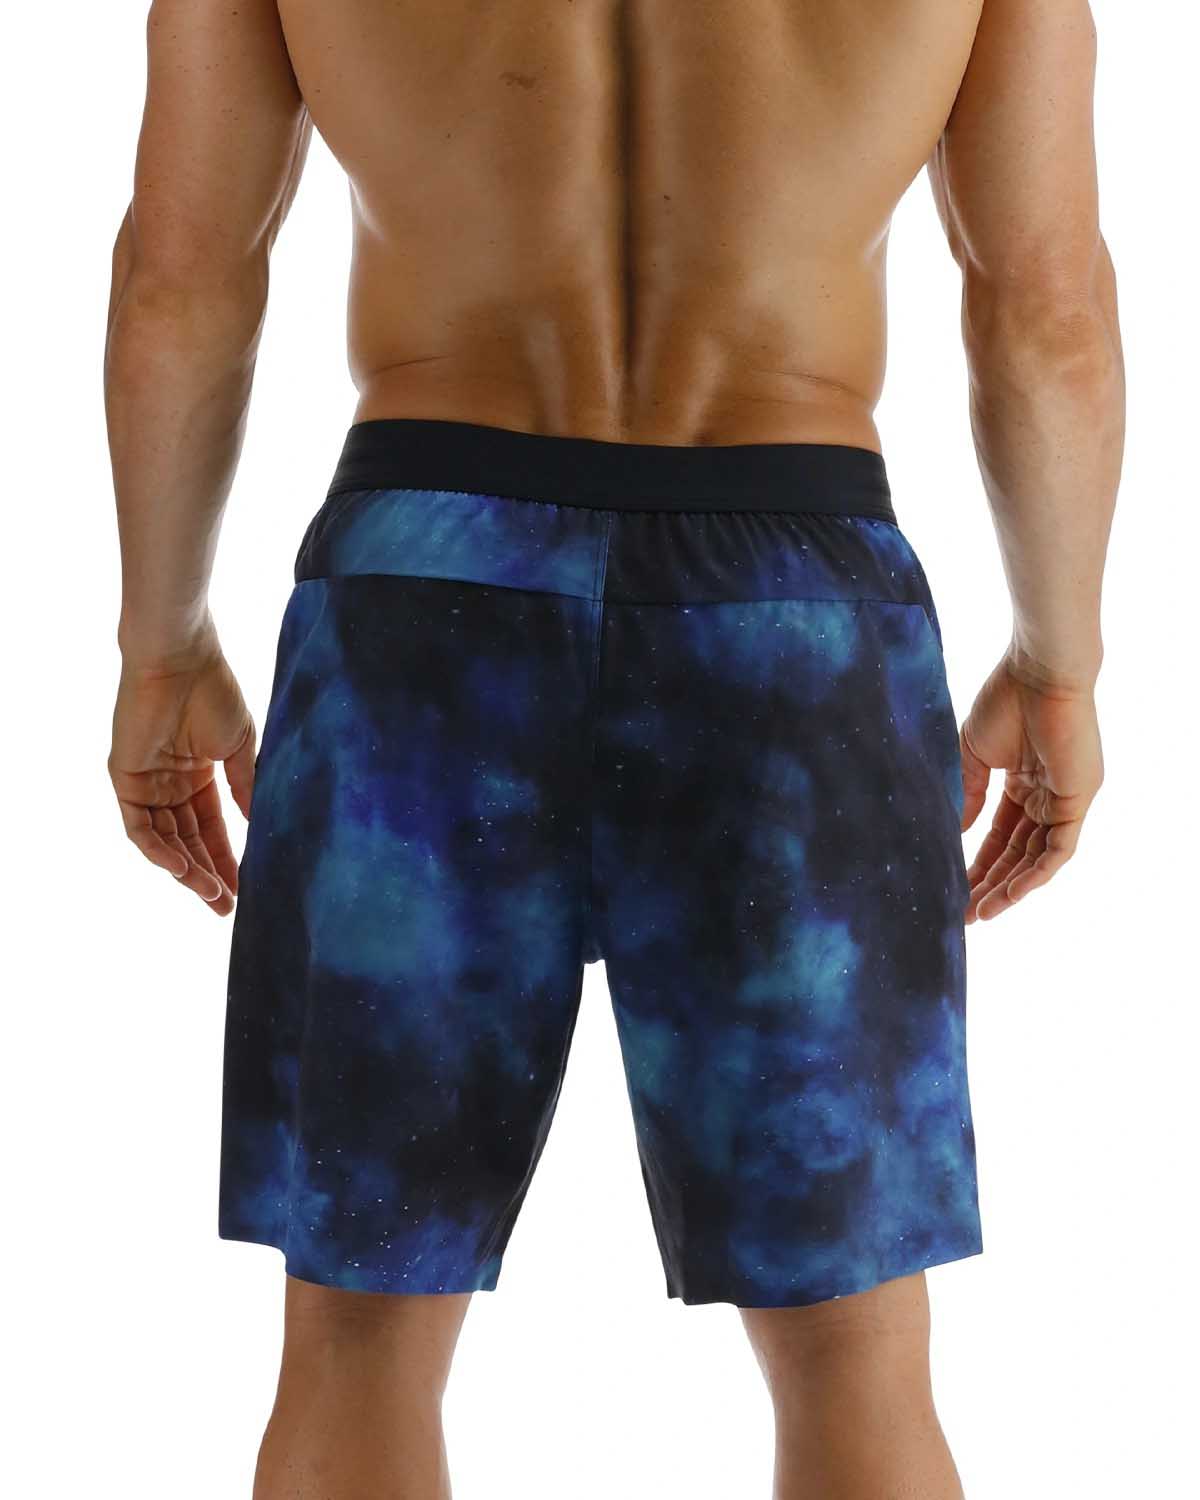 Pantalones cortos ininterrumpidos de 7" con forro Tyr Hydrosphere - Cosmic Night